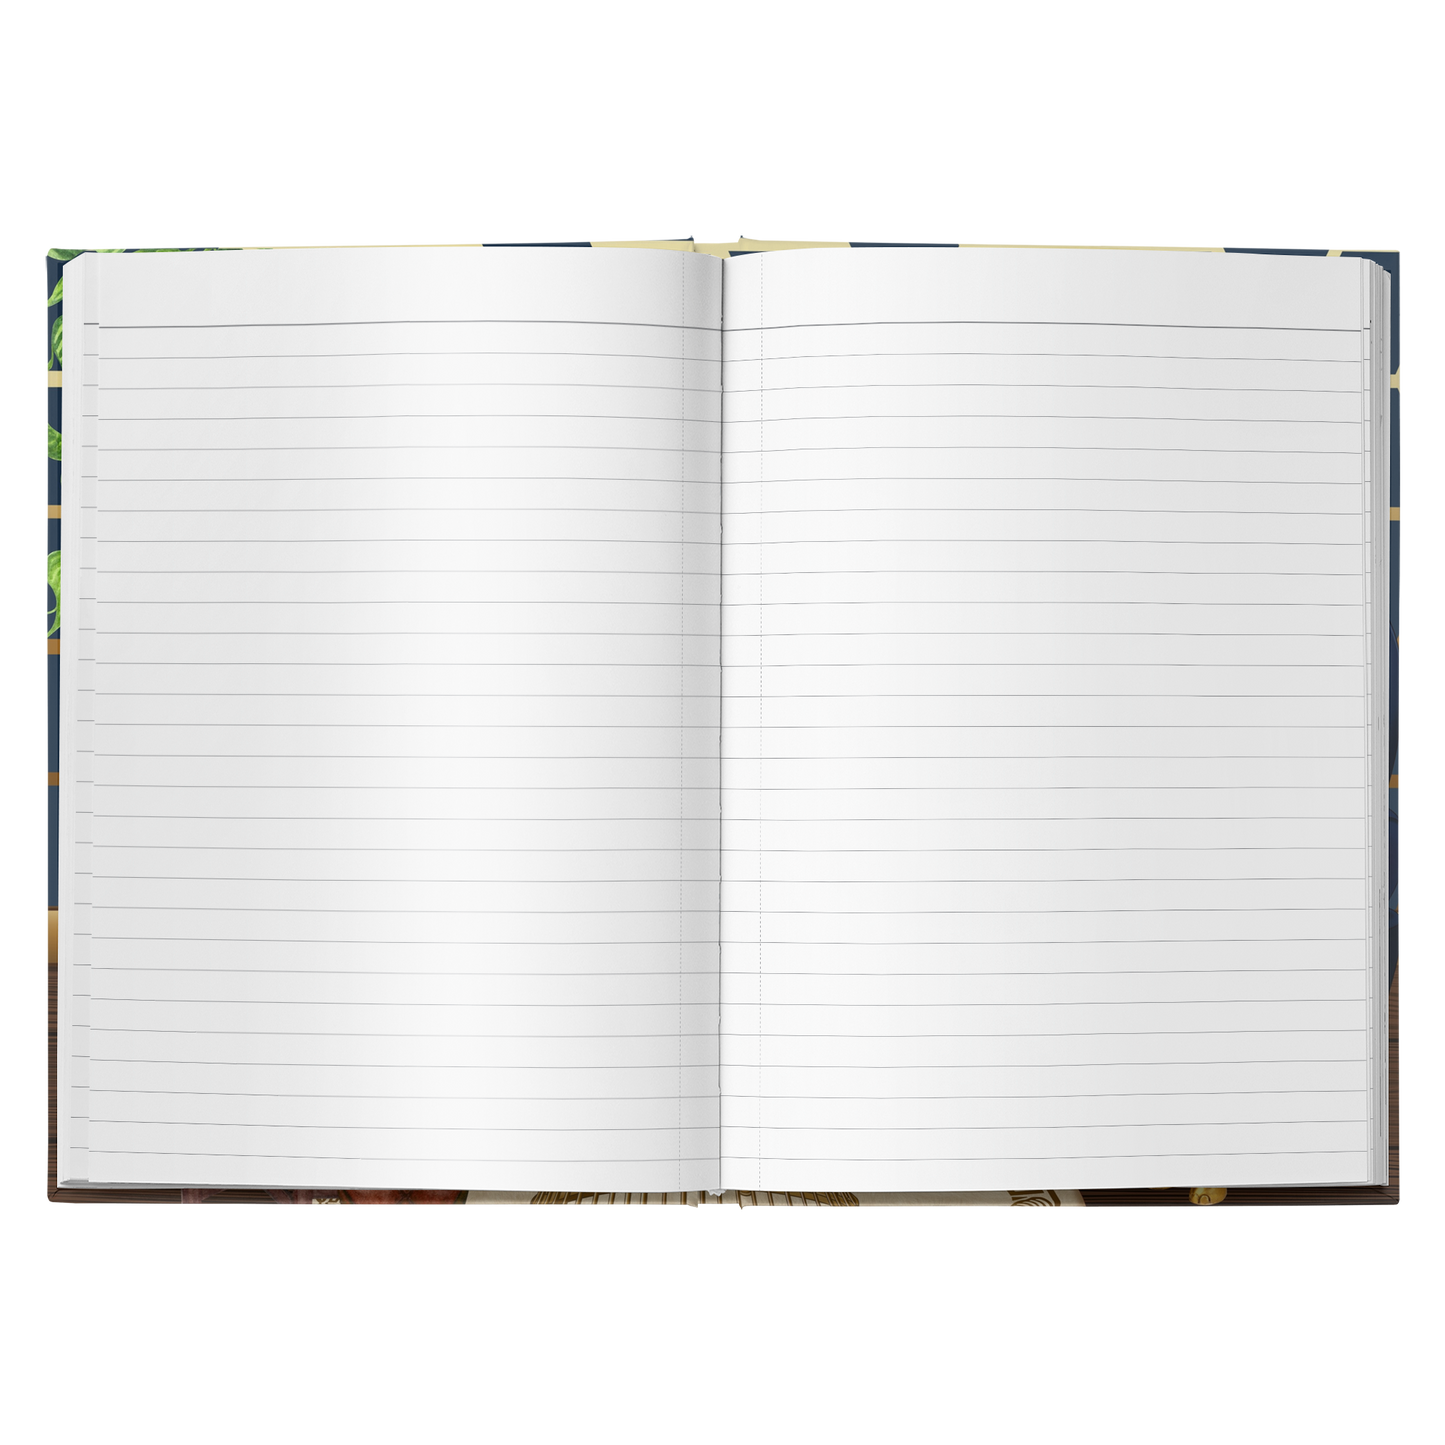 Zen Hardcover Notebook/Journal